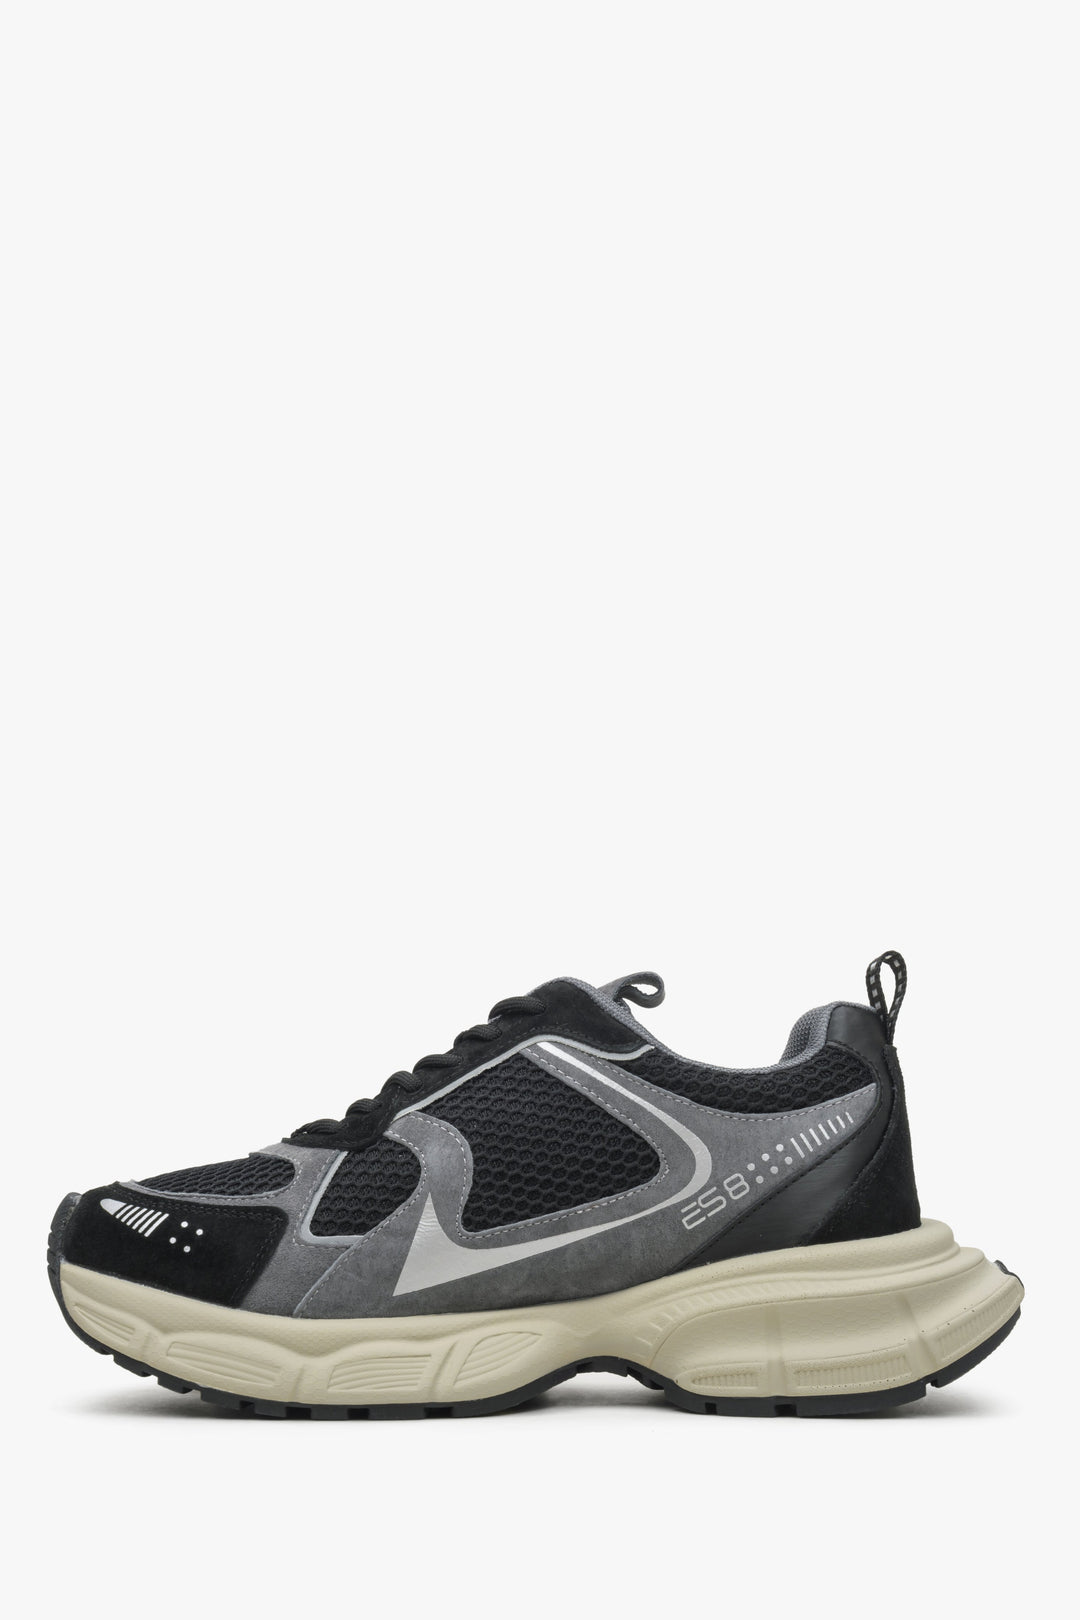 Wygodne sneakersy damskie ES8 w kolorze czarno-szarym - profil buta.